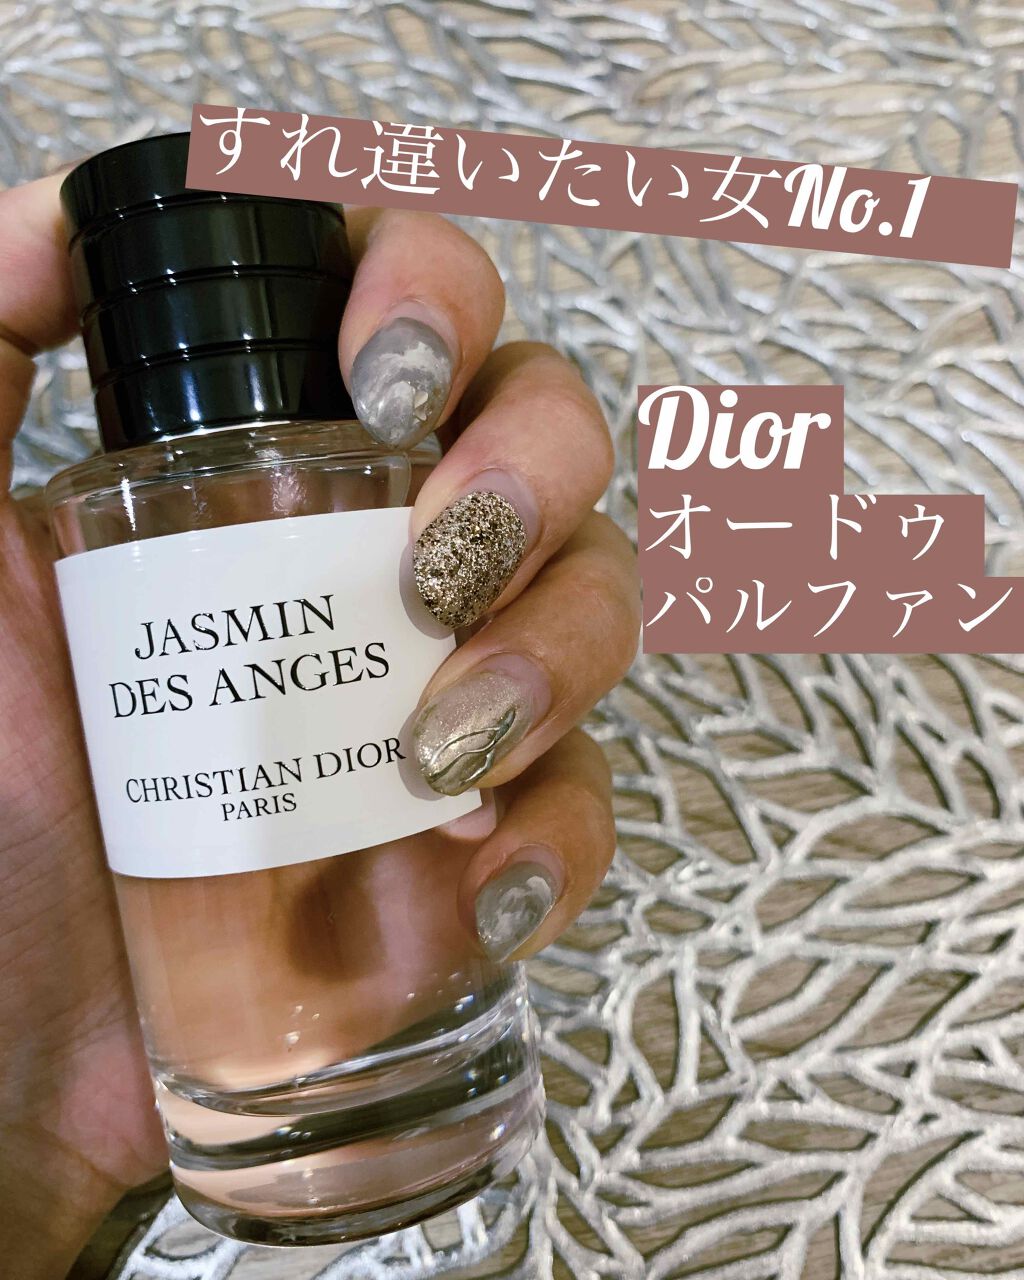 信用 Dior Jasmin Des Anges 香水サンプル agapeeurope.org